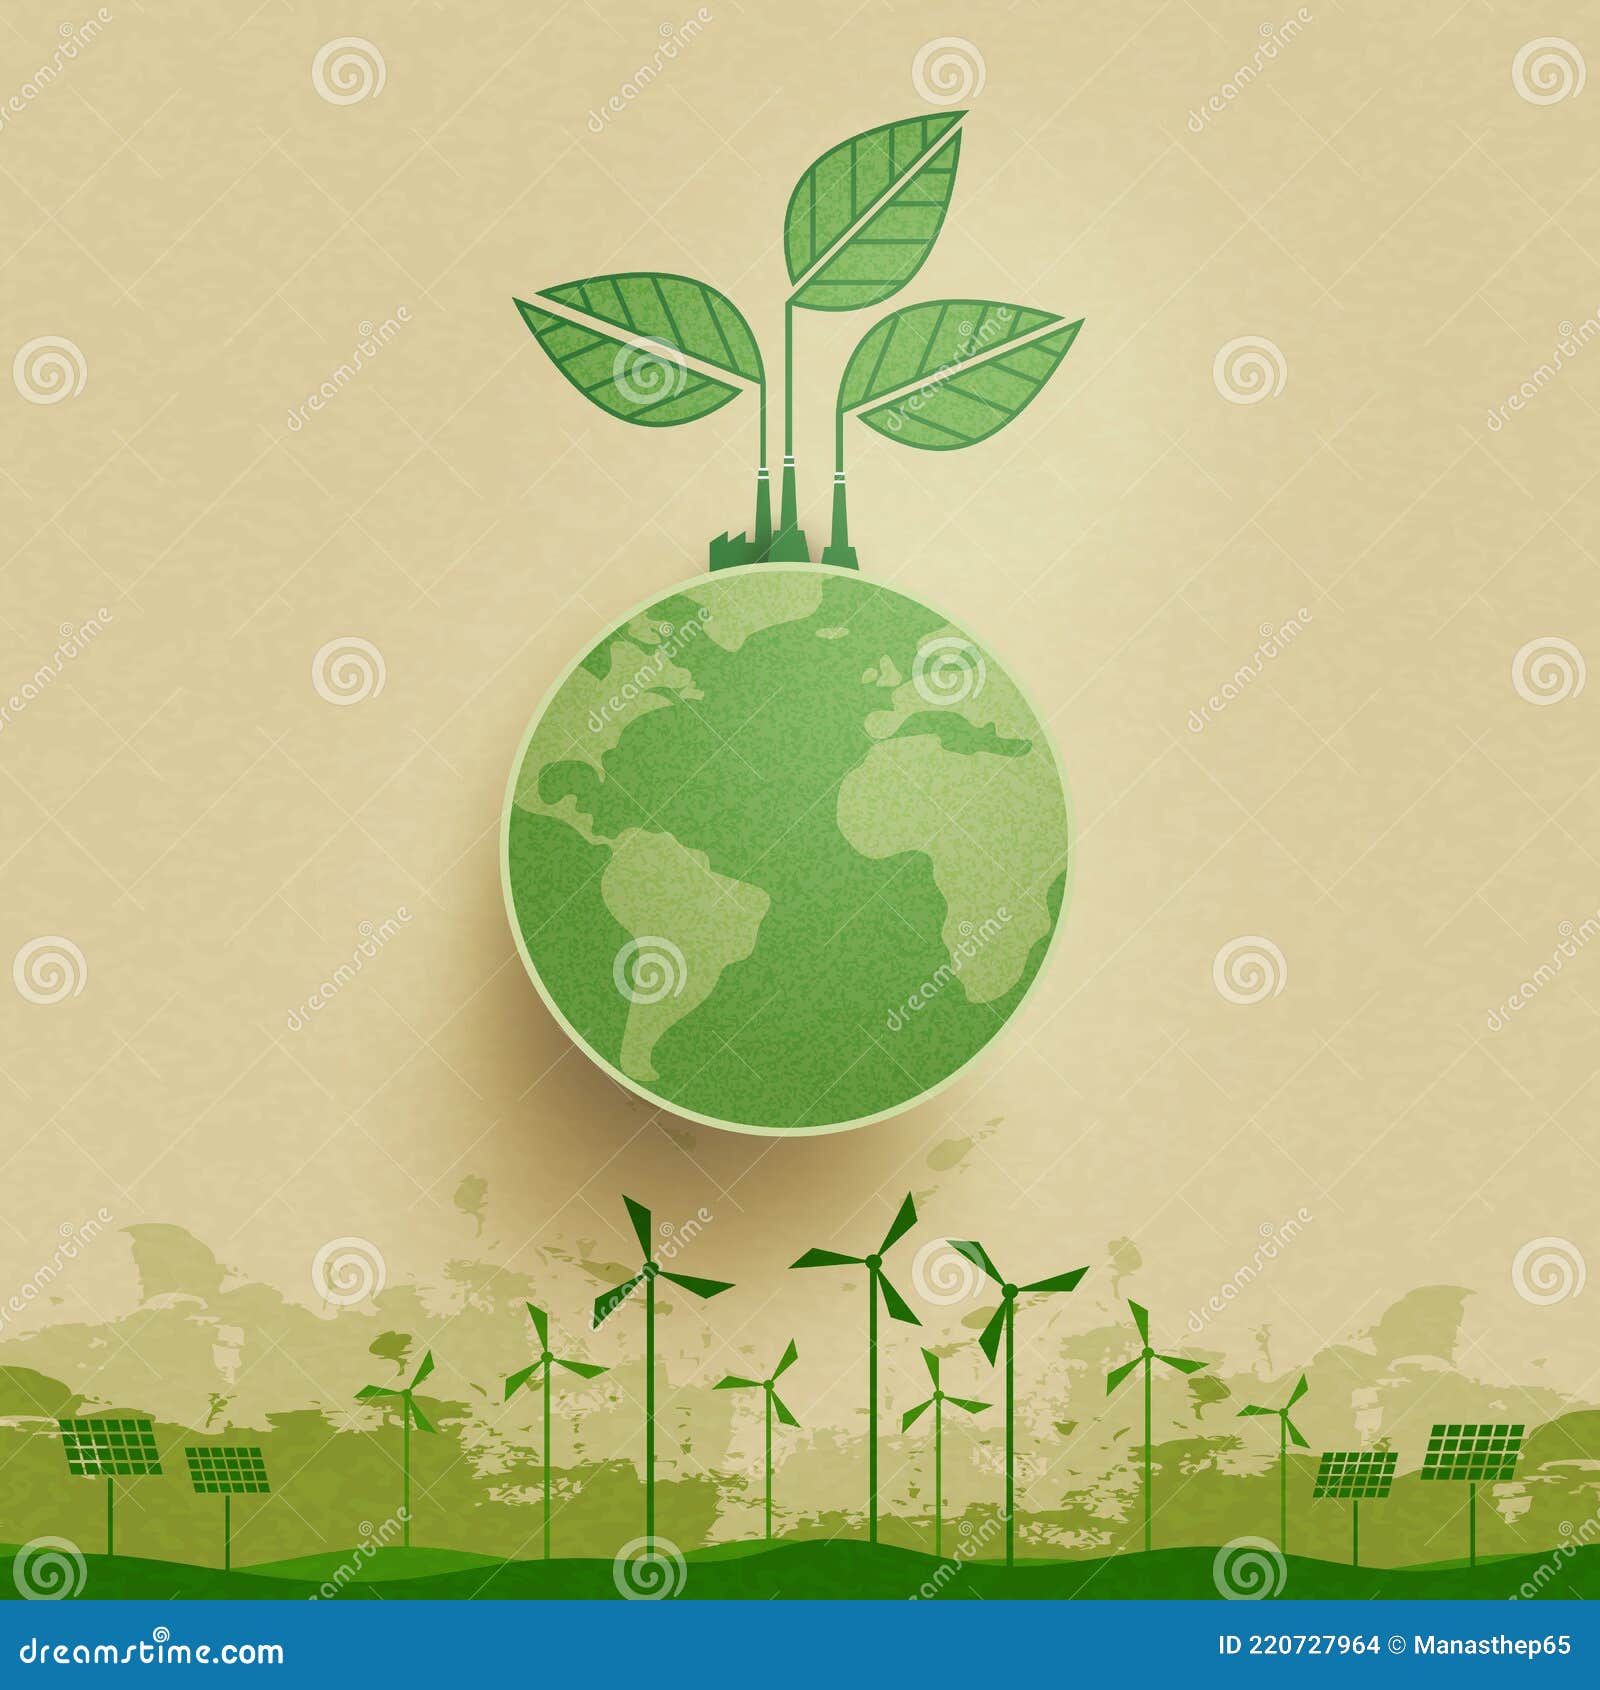 Năng lượng tái tạo là giải pháp để giảm thiểu sự ràng buộc trên nguồn năng lượng tiêu thụ. Chúng ta cần cải thiện sự hiểu biết về các nguồn năng lượng tái tạo và ảnh hưởng của chúng lên môi trường. Hãy xem hình ảnh về năng lượng tái tạo để khám phá thêm về chủ đề này.